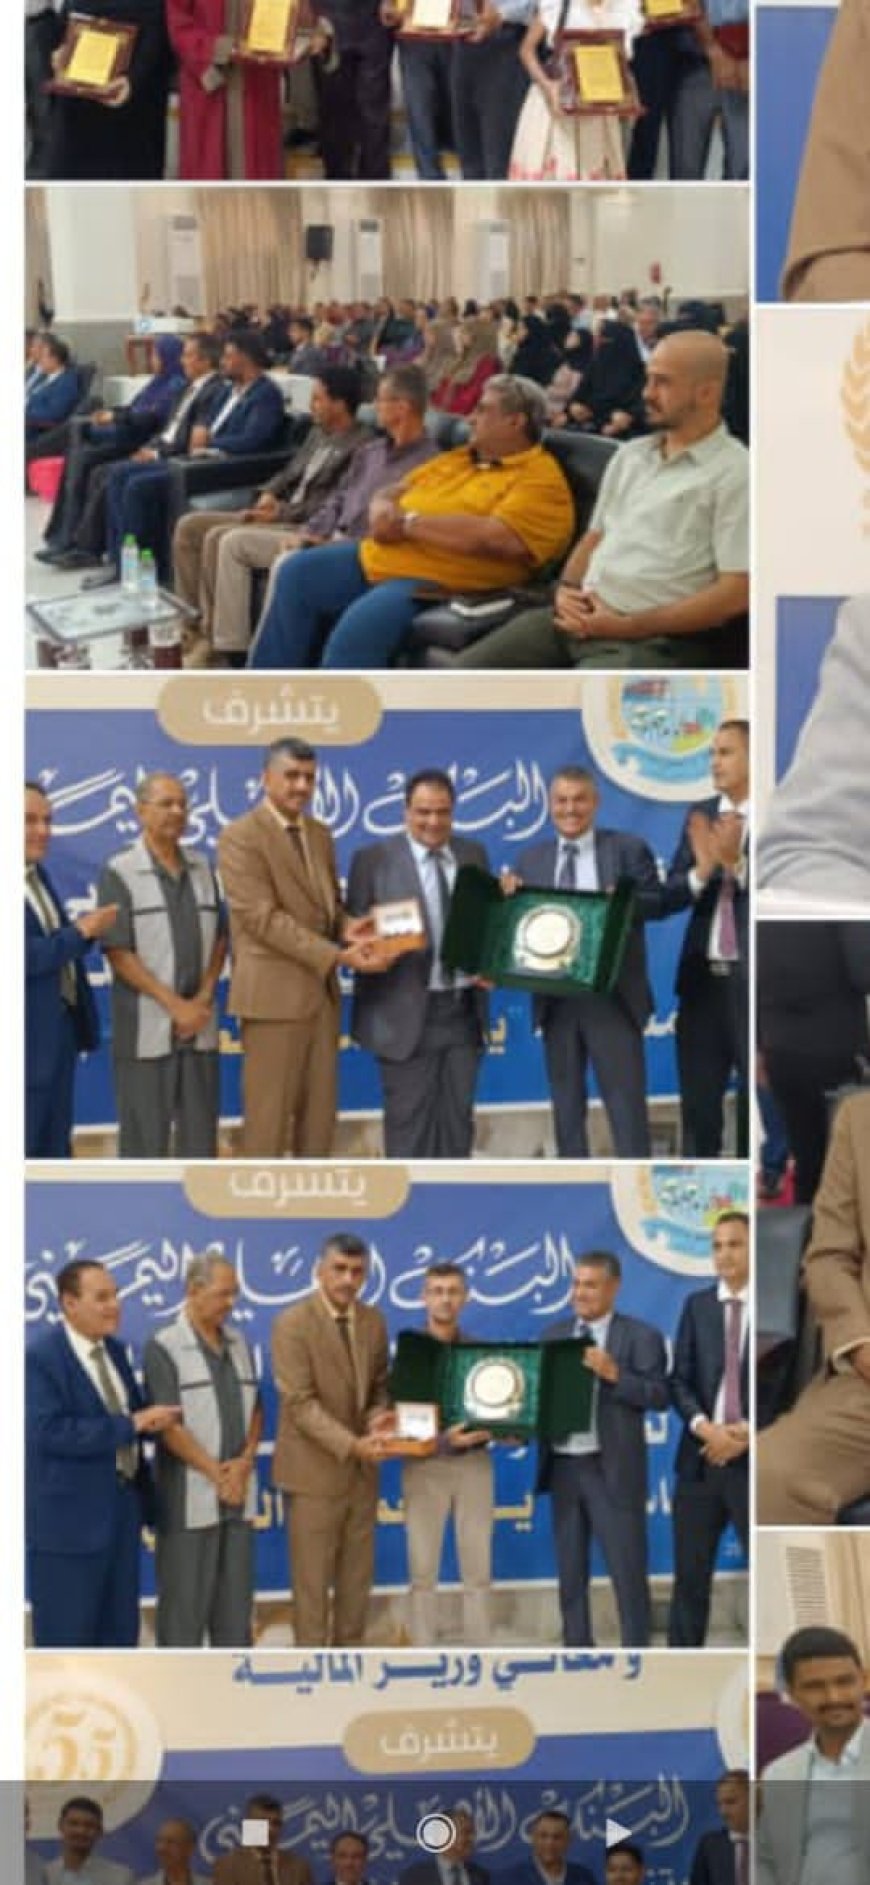 عدن/البنك الاهلي اليمني ينظم حفلا خطابيا وتكريميا بمناسبة يوم العمال العالمي